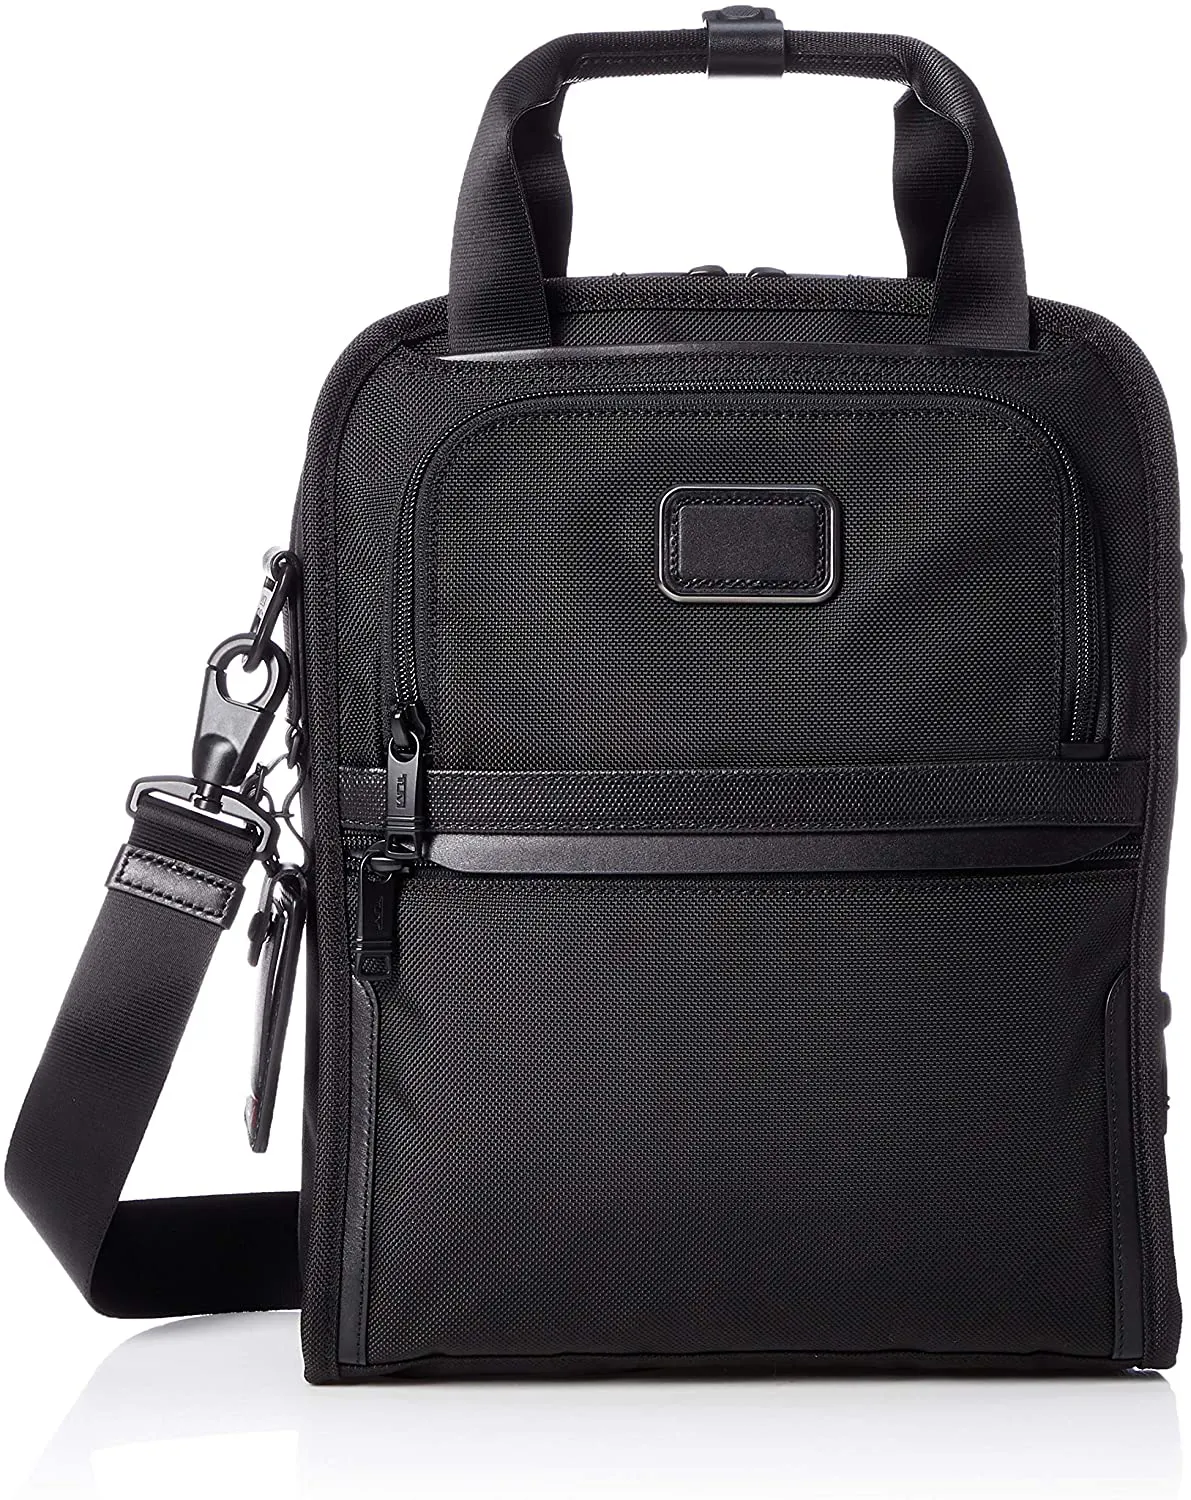 Medium Travel Tote Bag Cross Body Bag Laptop Hand Bag